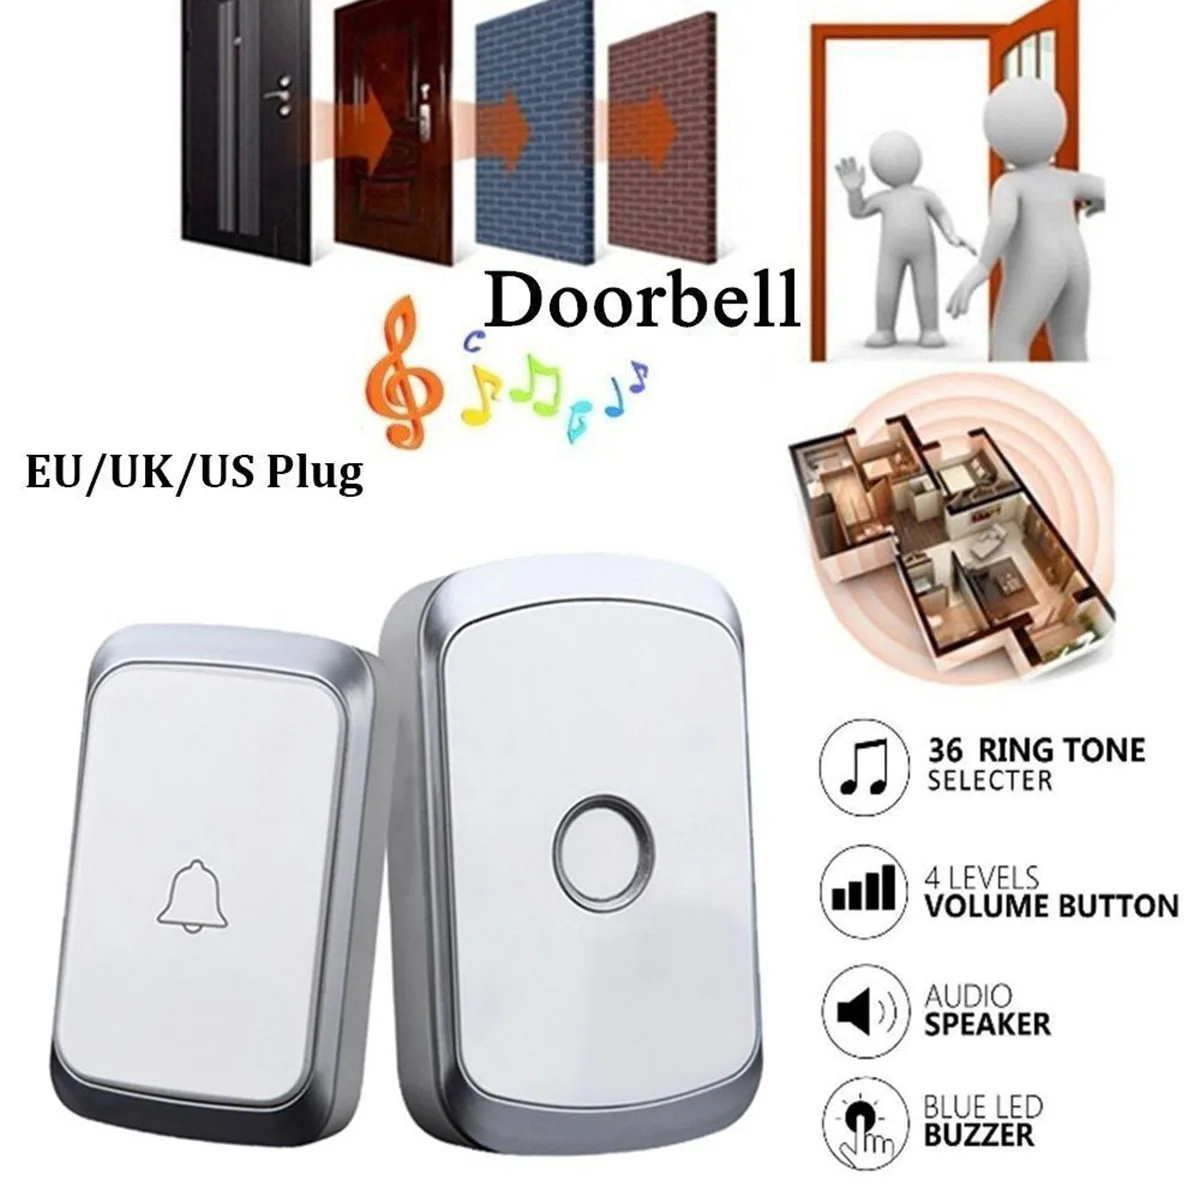 

Security Wireless Doorbell Waterproof Doorbells 300M Range Home Door bell 36 Ring Tones And 4 Volume Level